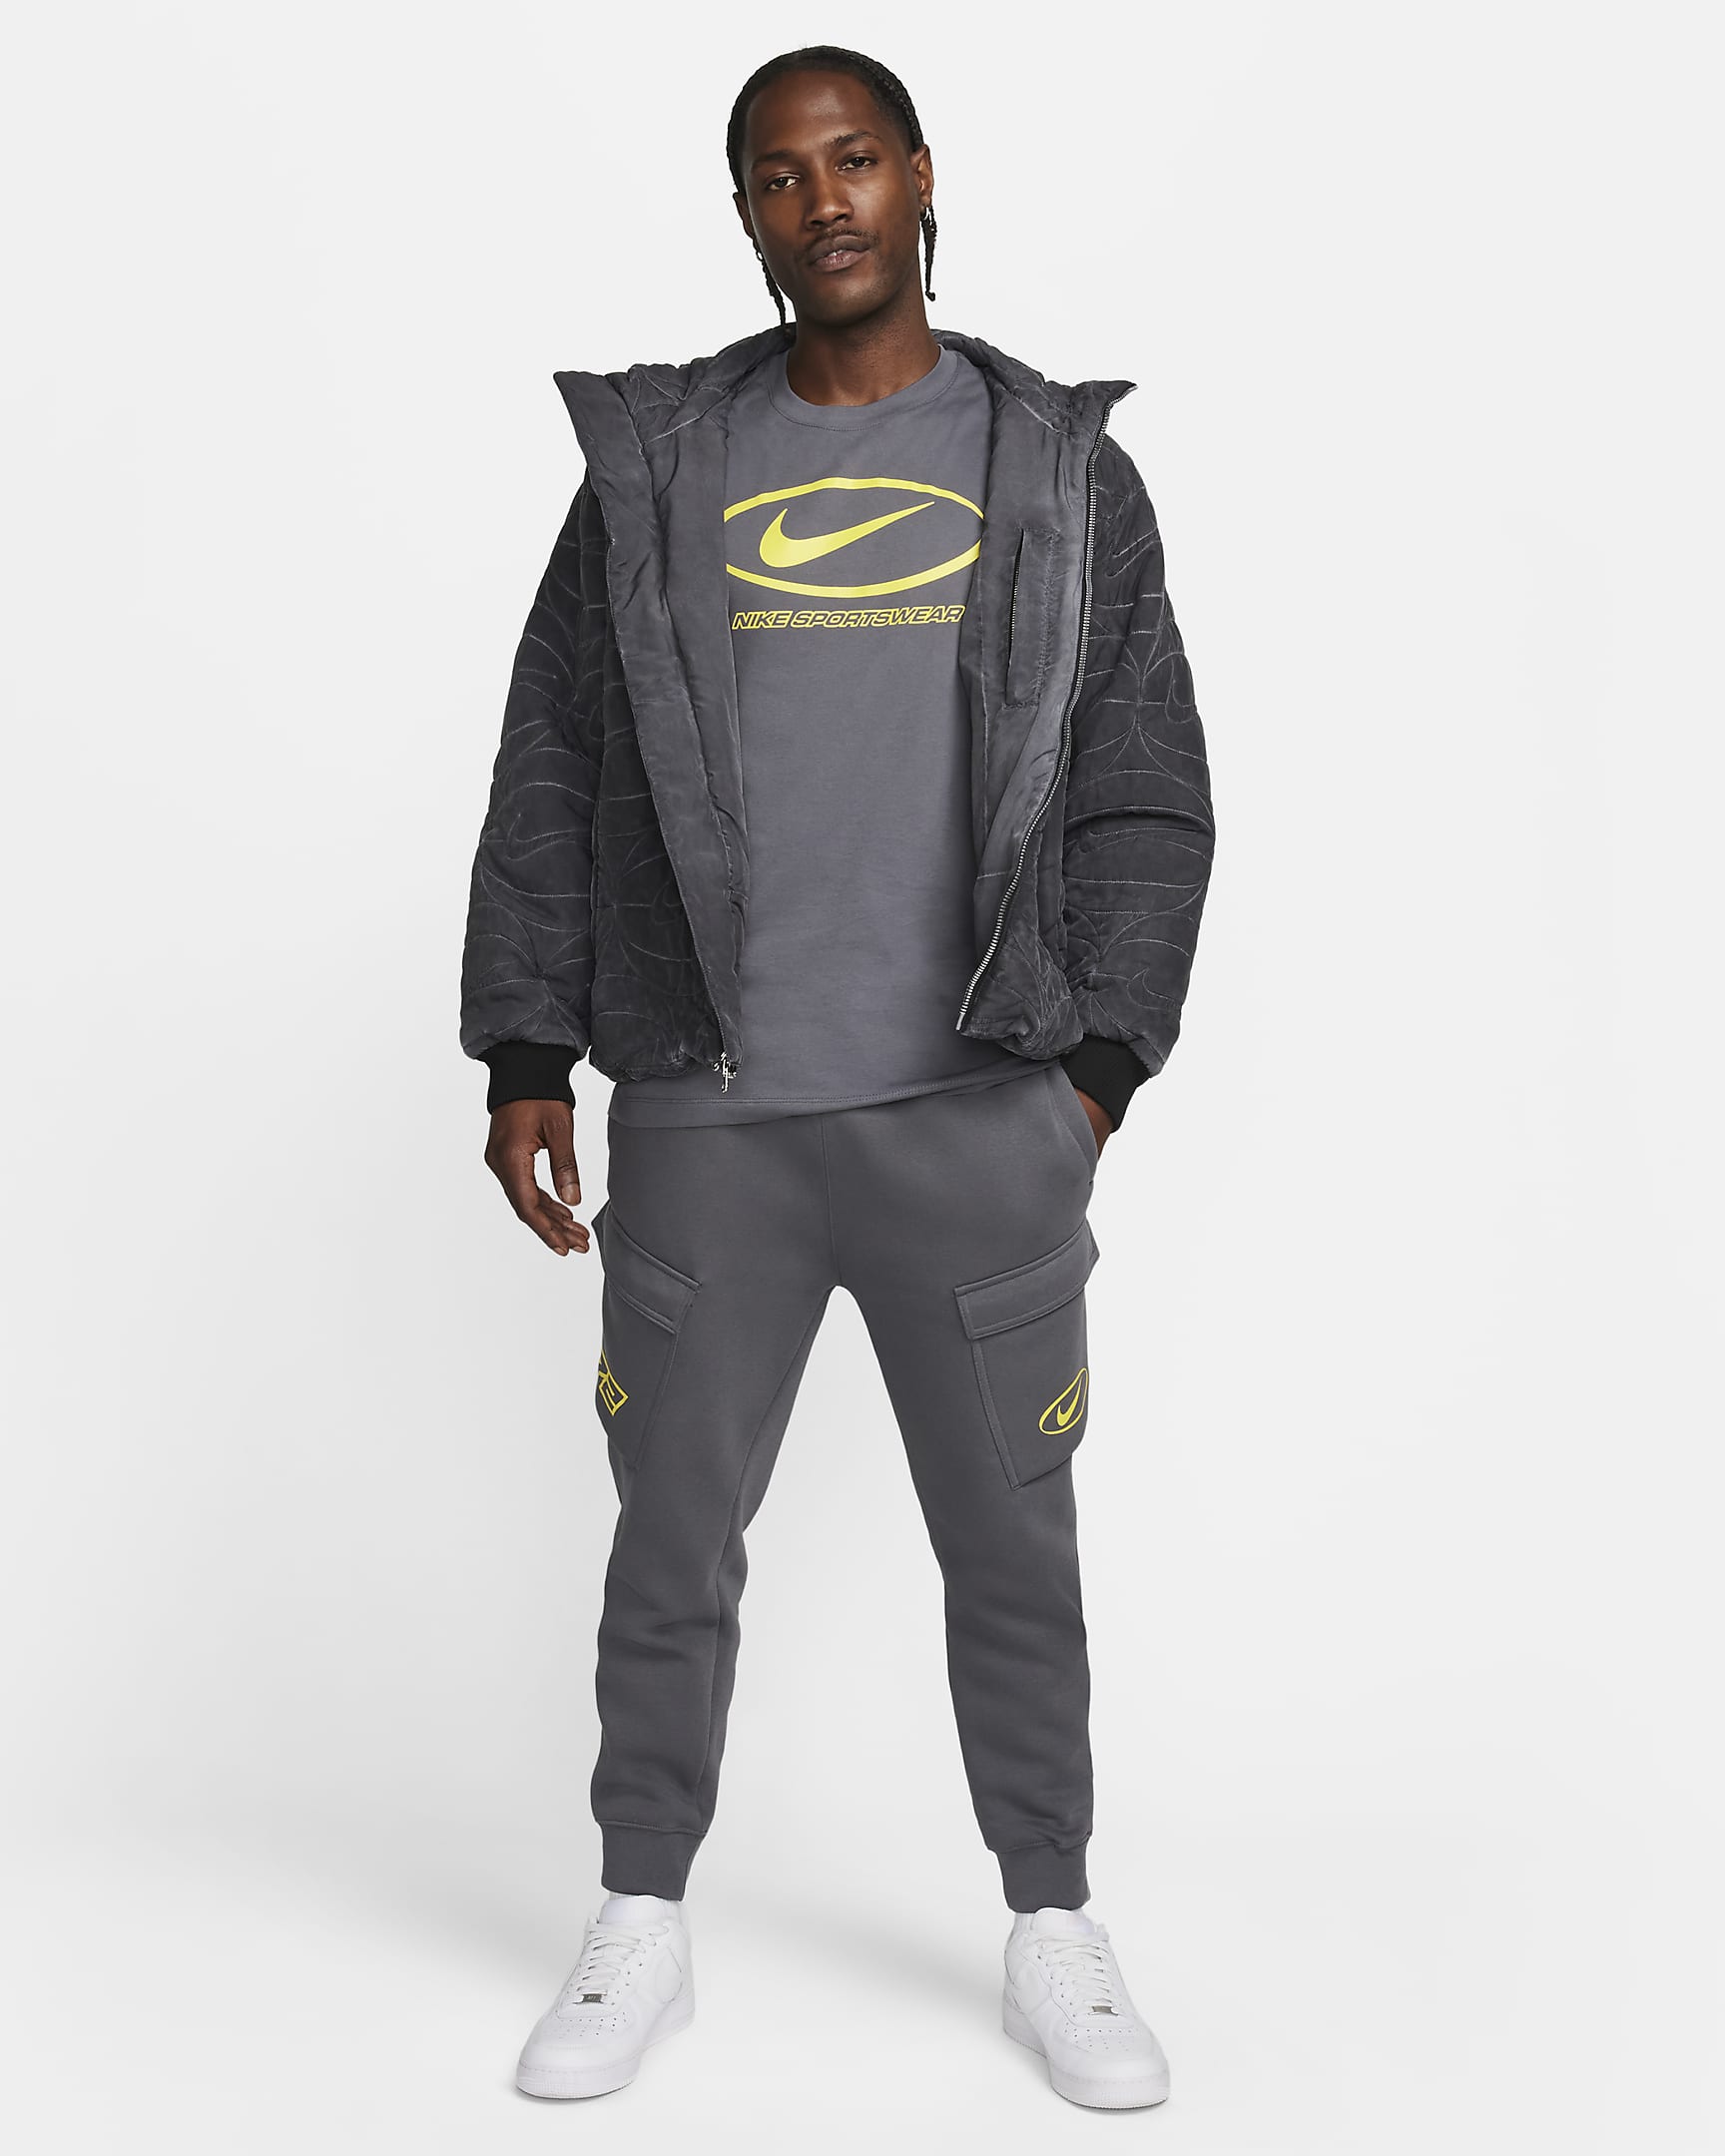 Nike Sportswear Men's Graphic T-Shirt. Nike LU